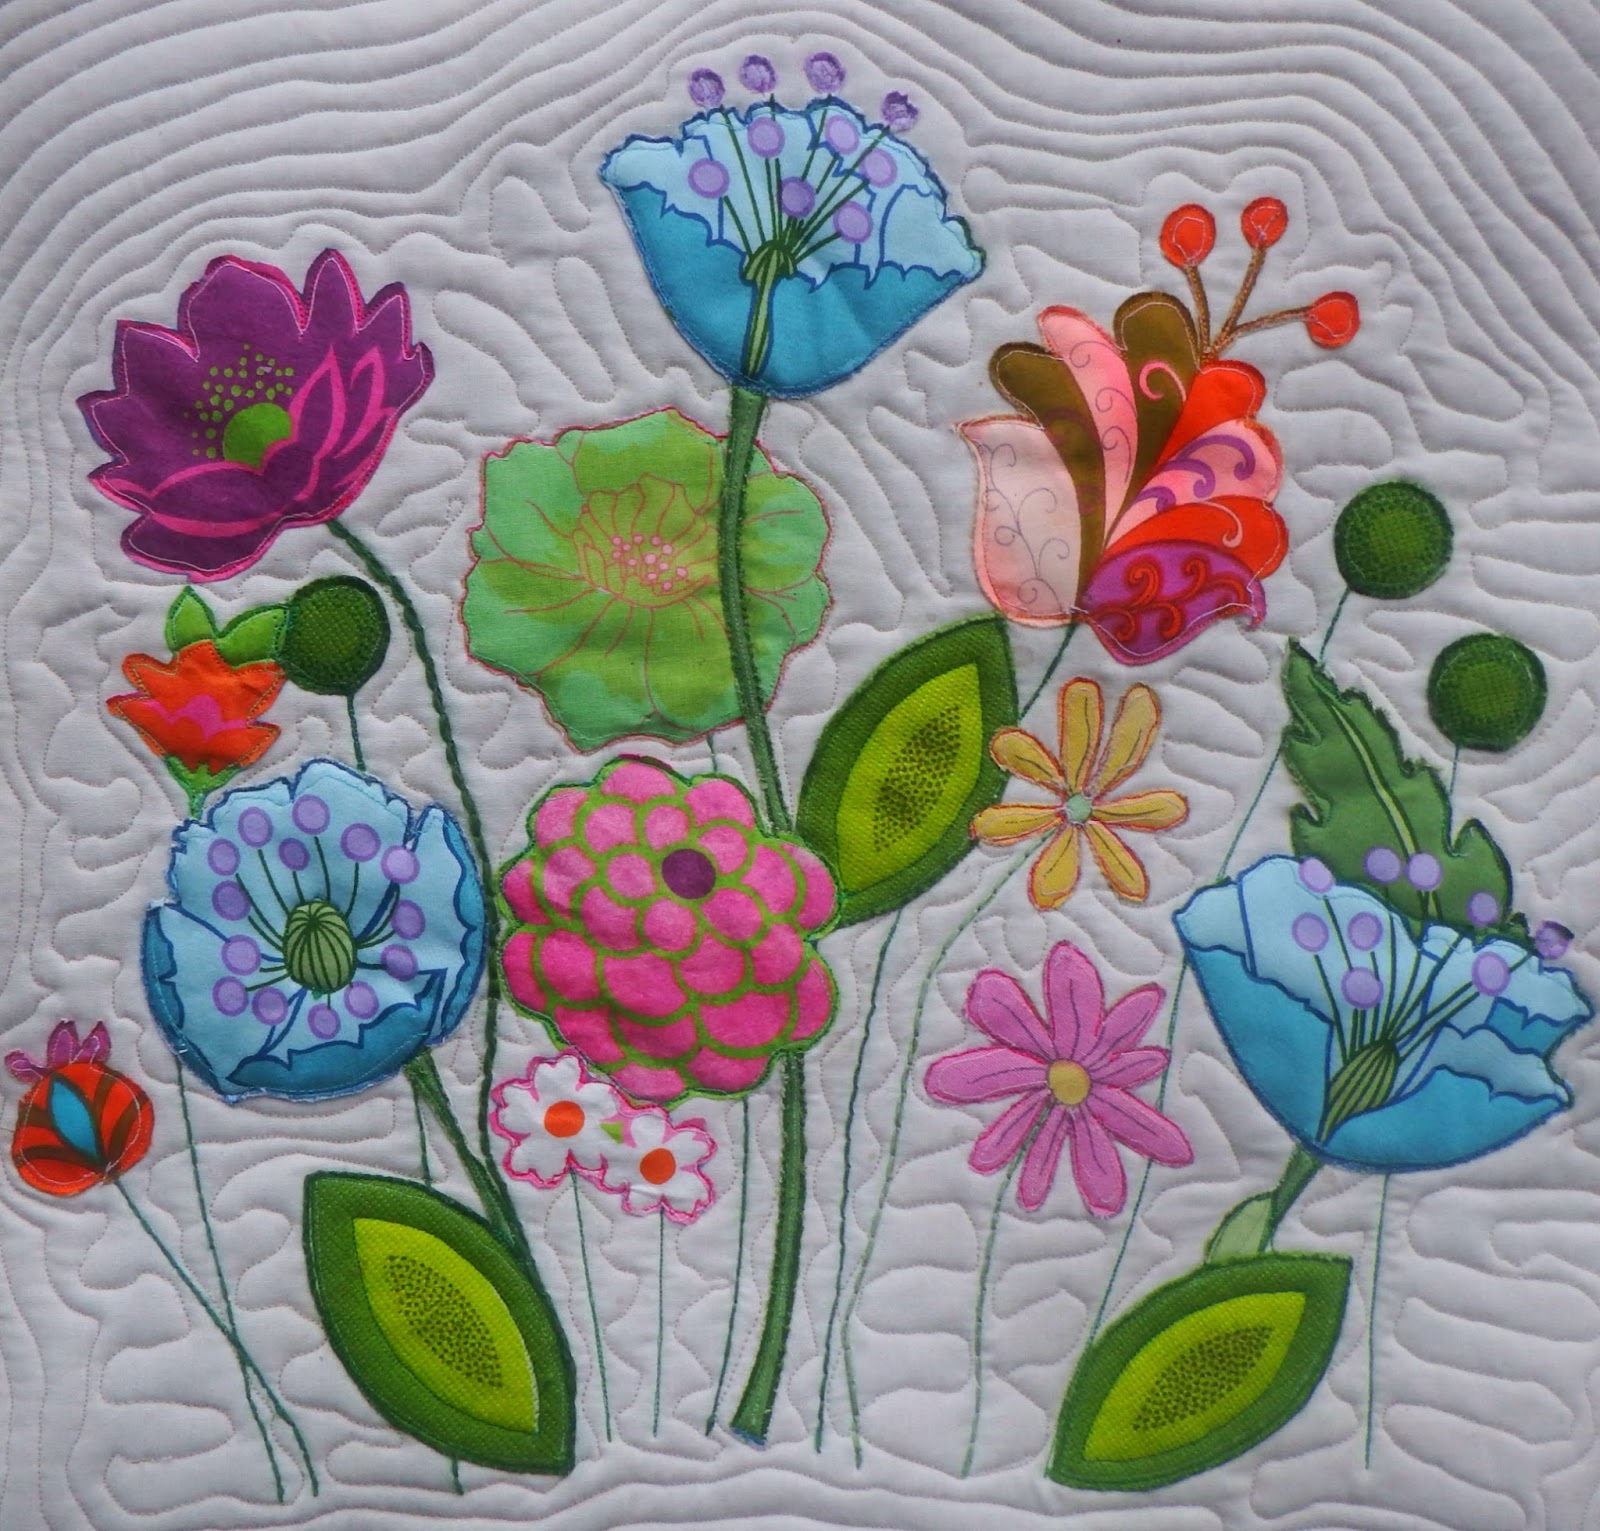 Flower Quilt Patterns Quilt Flower Patterns – My Patterns – Quilt ...